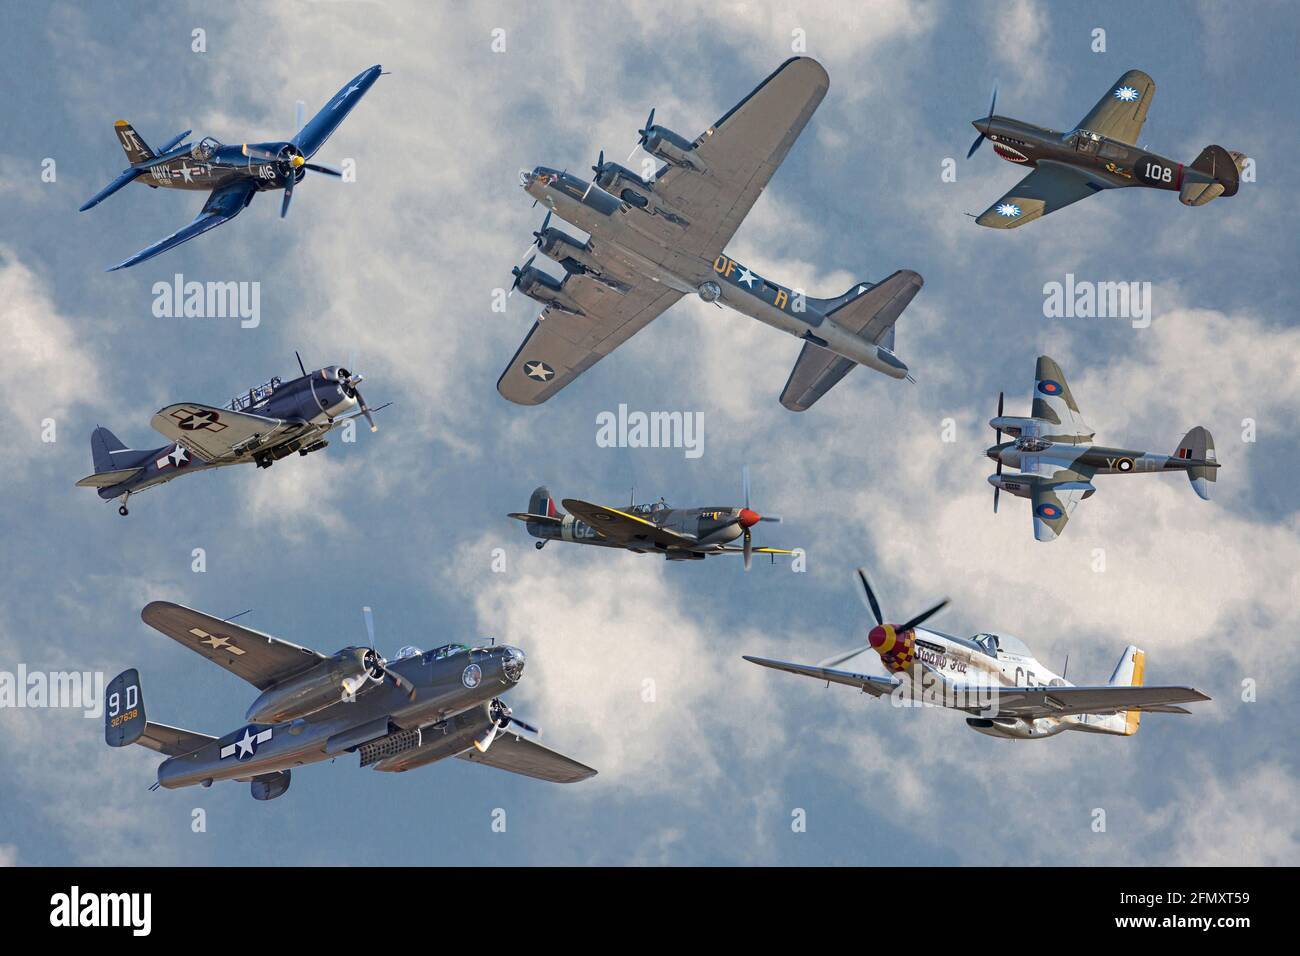 Eine Collage von alliierten Flugzeugen, die den Zweiten Weltkrieg gewonnen haben Fotos, die bei der jährlichen Warbirds Over Monroe Air Show in Monroe, North Carolina, aufgenommen wurden. Stockfoto